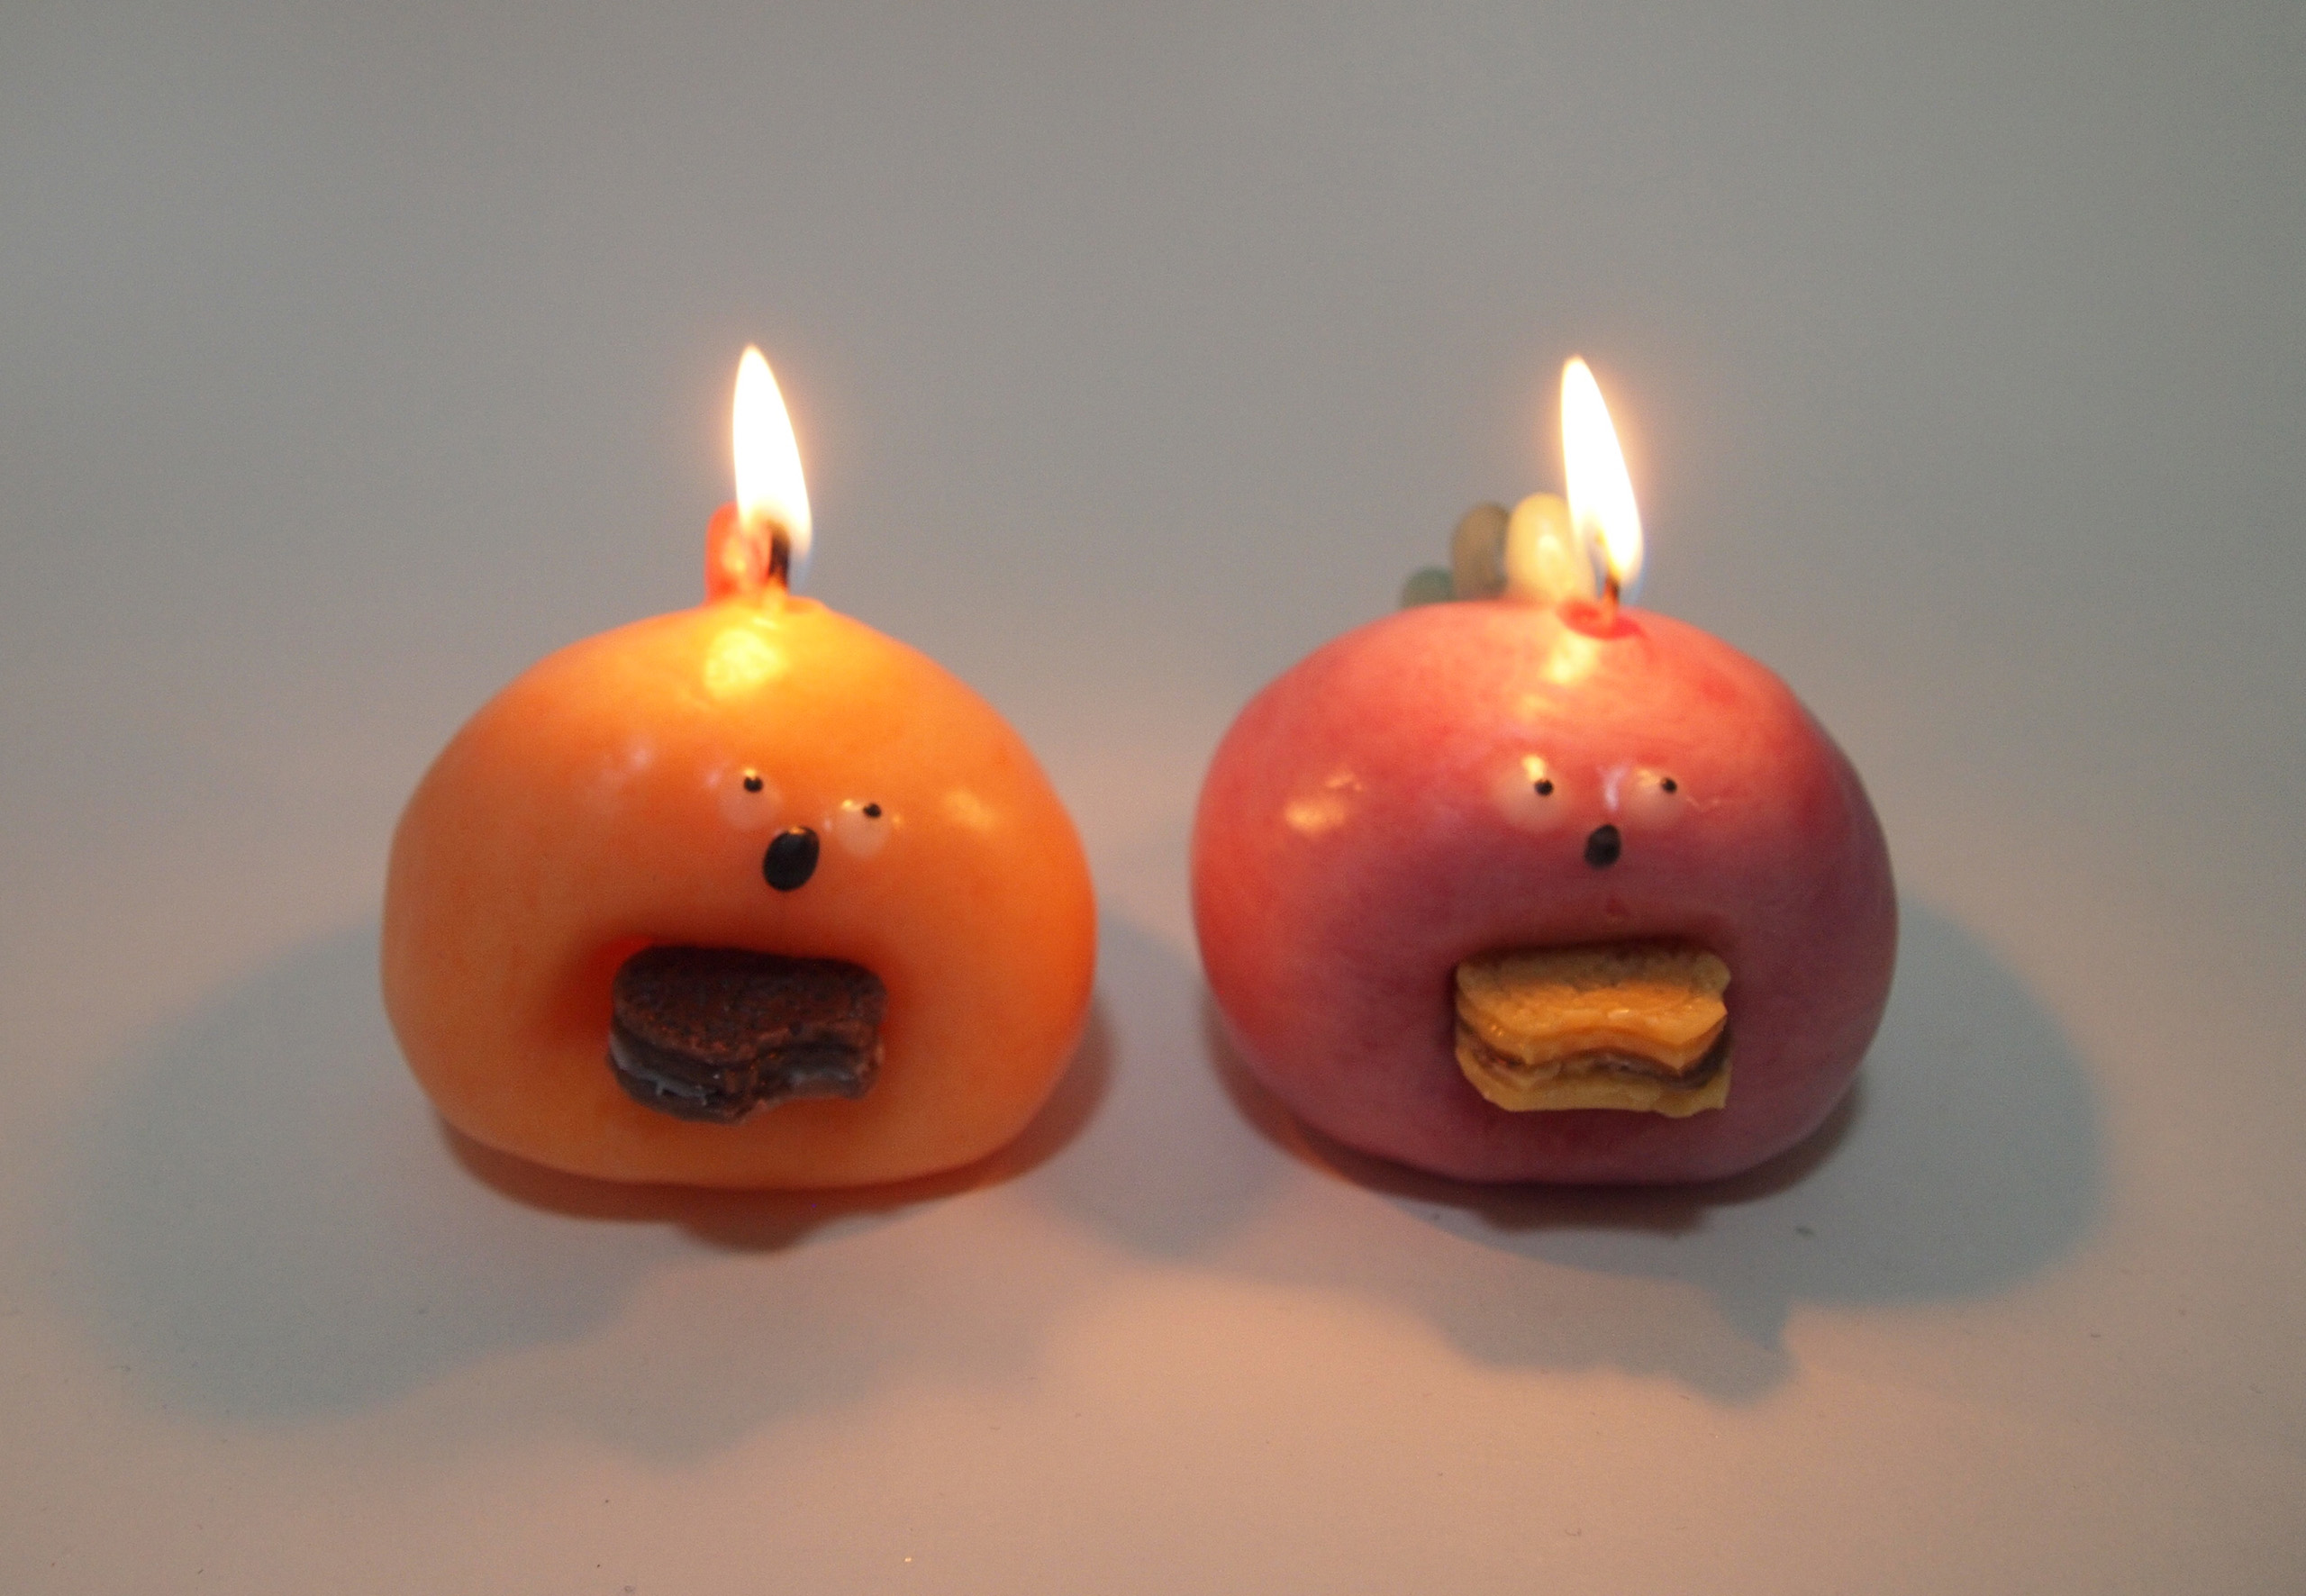 03_Kufuu candle